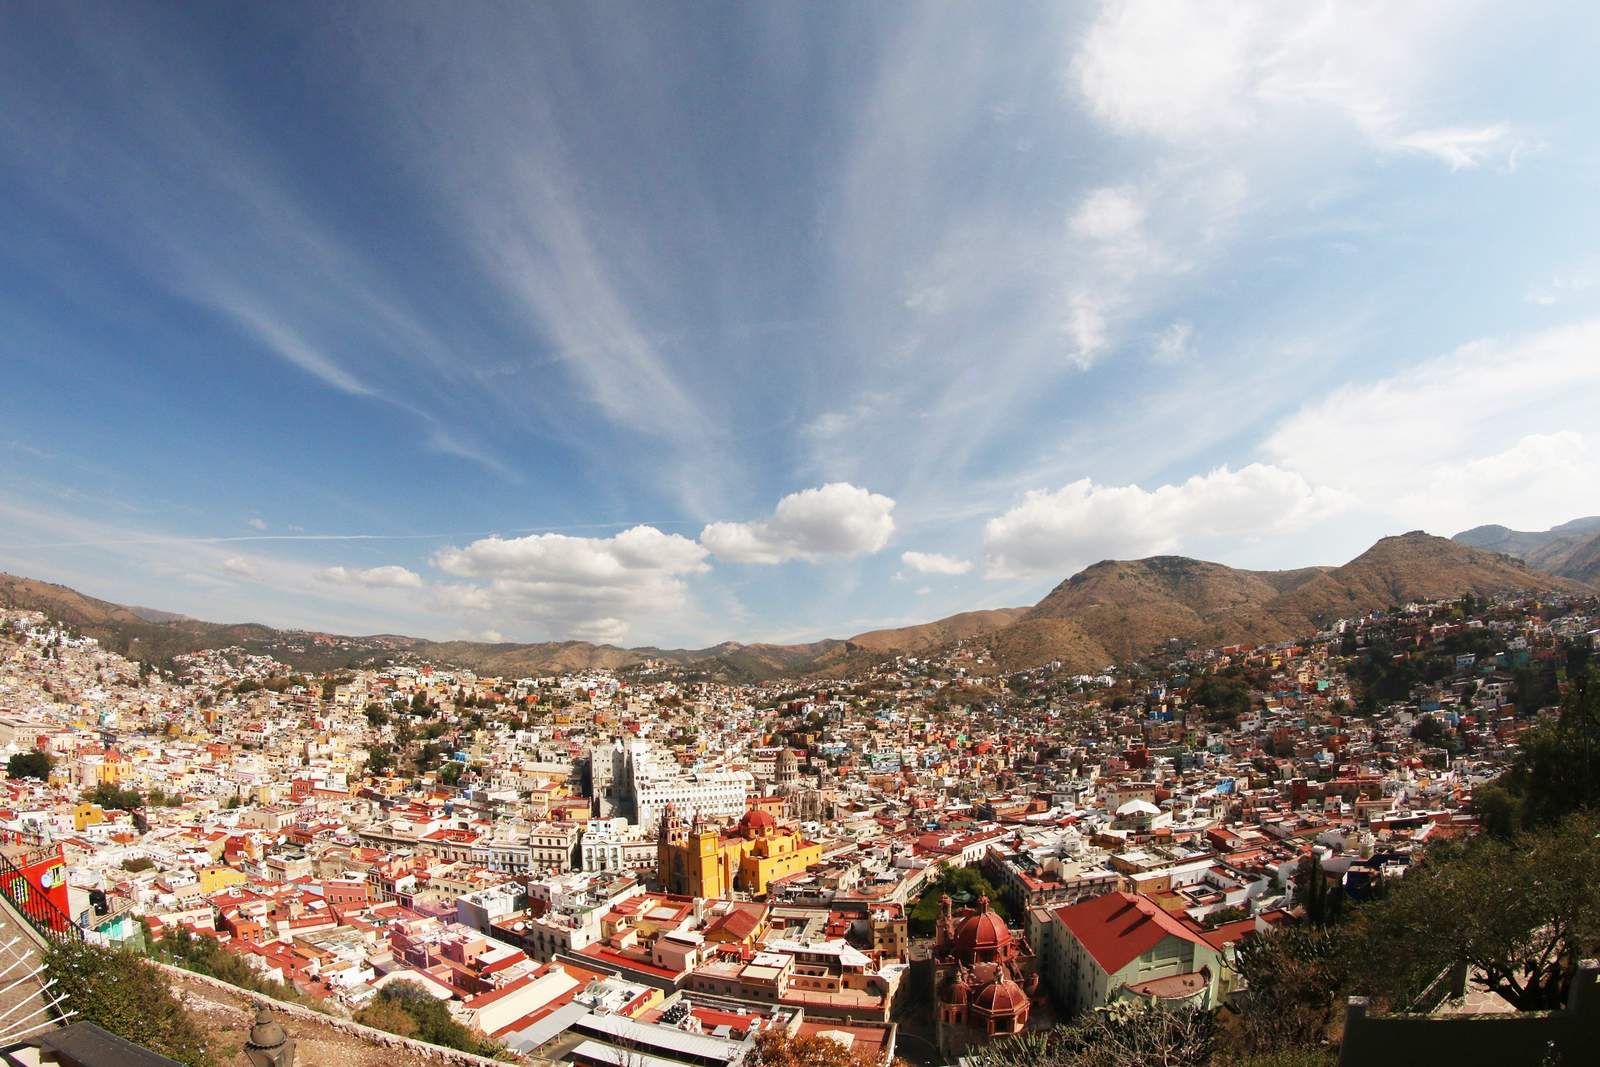 Promoción. Se expedirá una 'visa' de descuentos para los turistas en Guanajuato capital. (ARCHIVO)